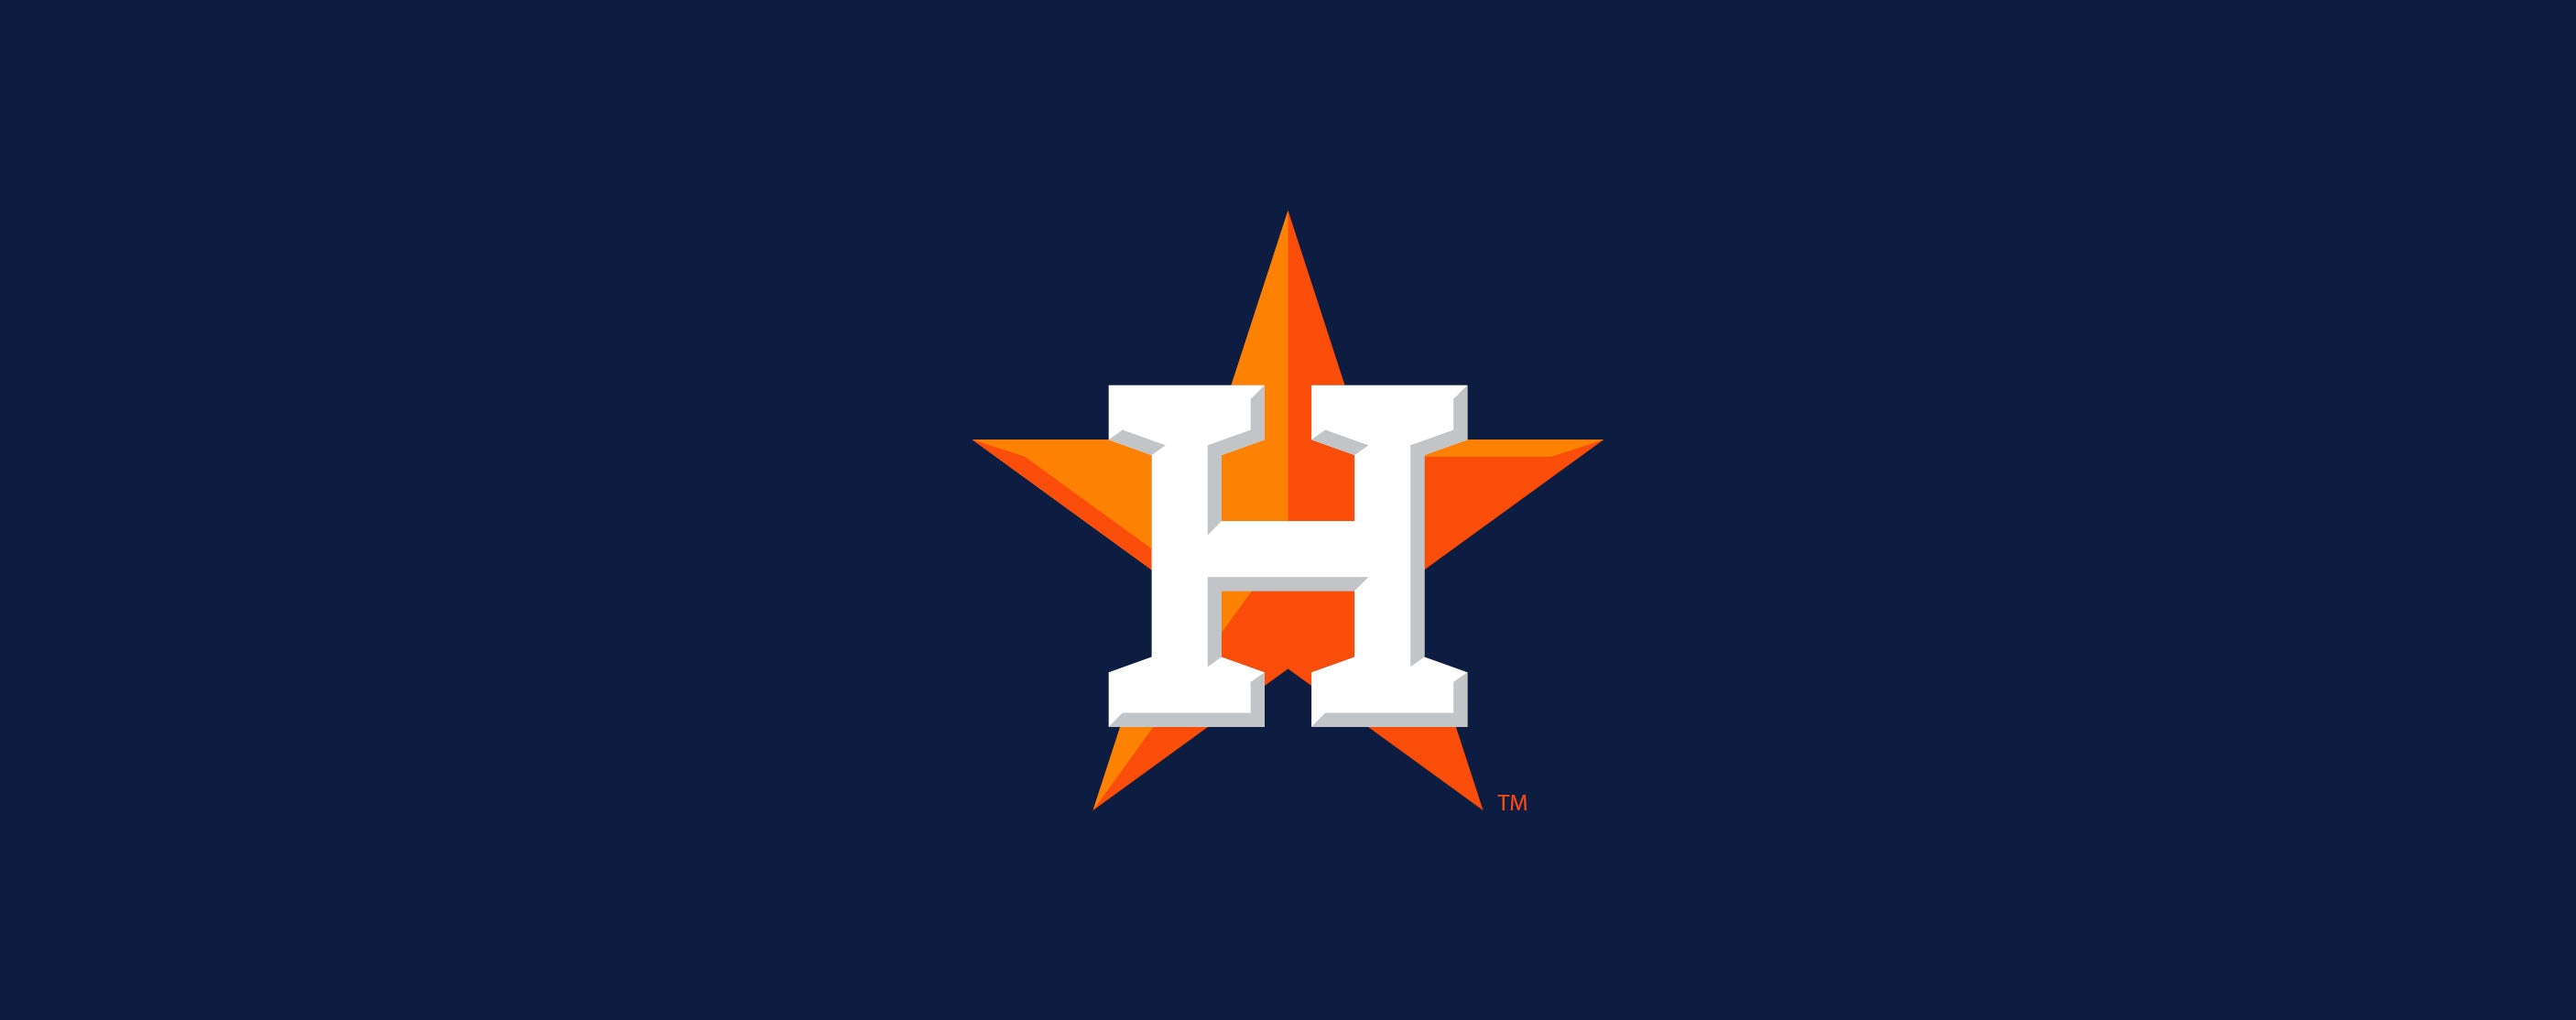 Houston Astros – For Bare Feet